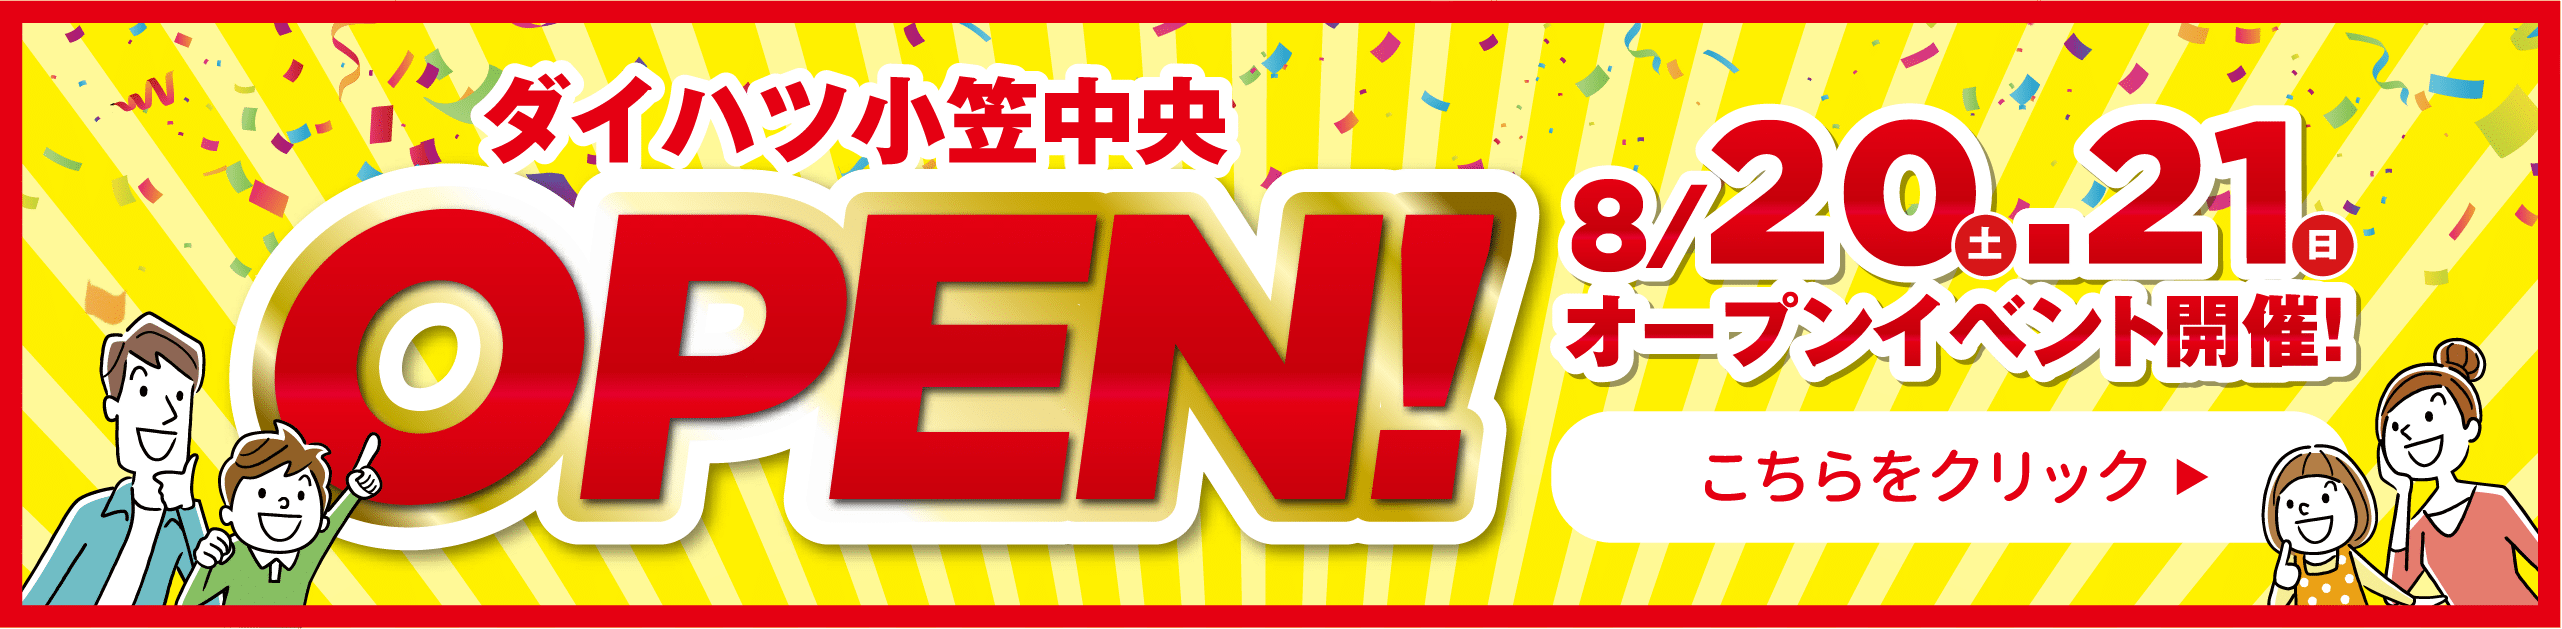 ダイハツ小笠中央 OPEN!8/20土.21日オープンイベント開催!こちらをクリック